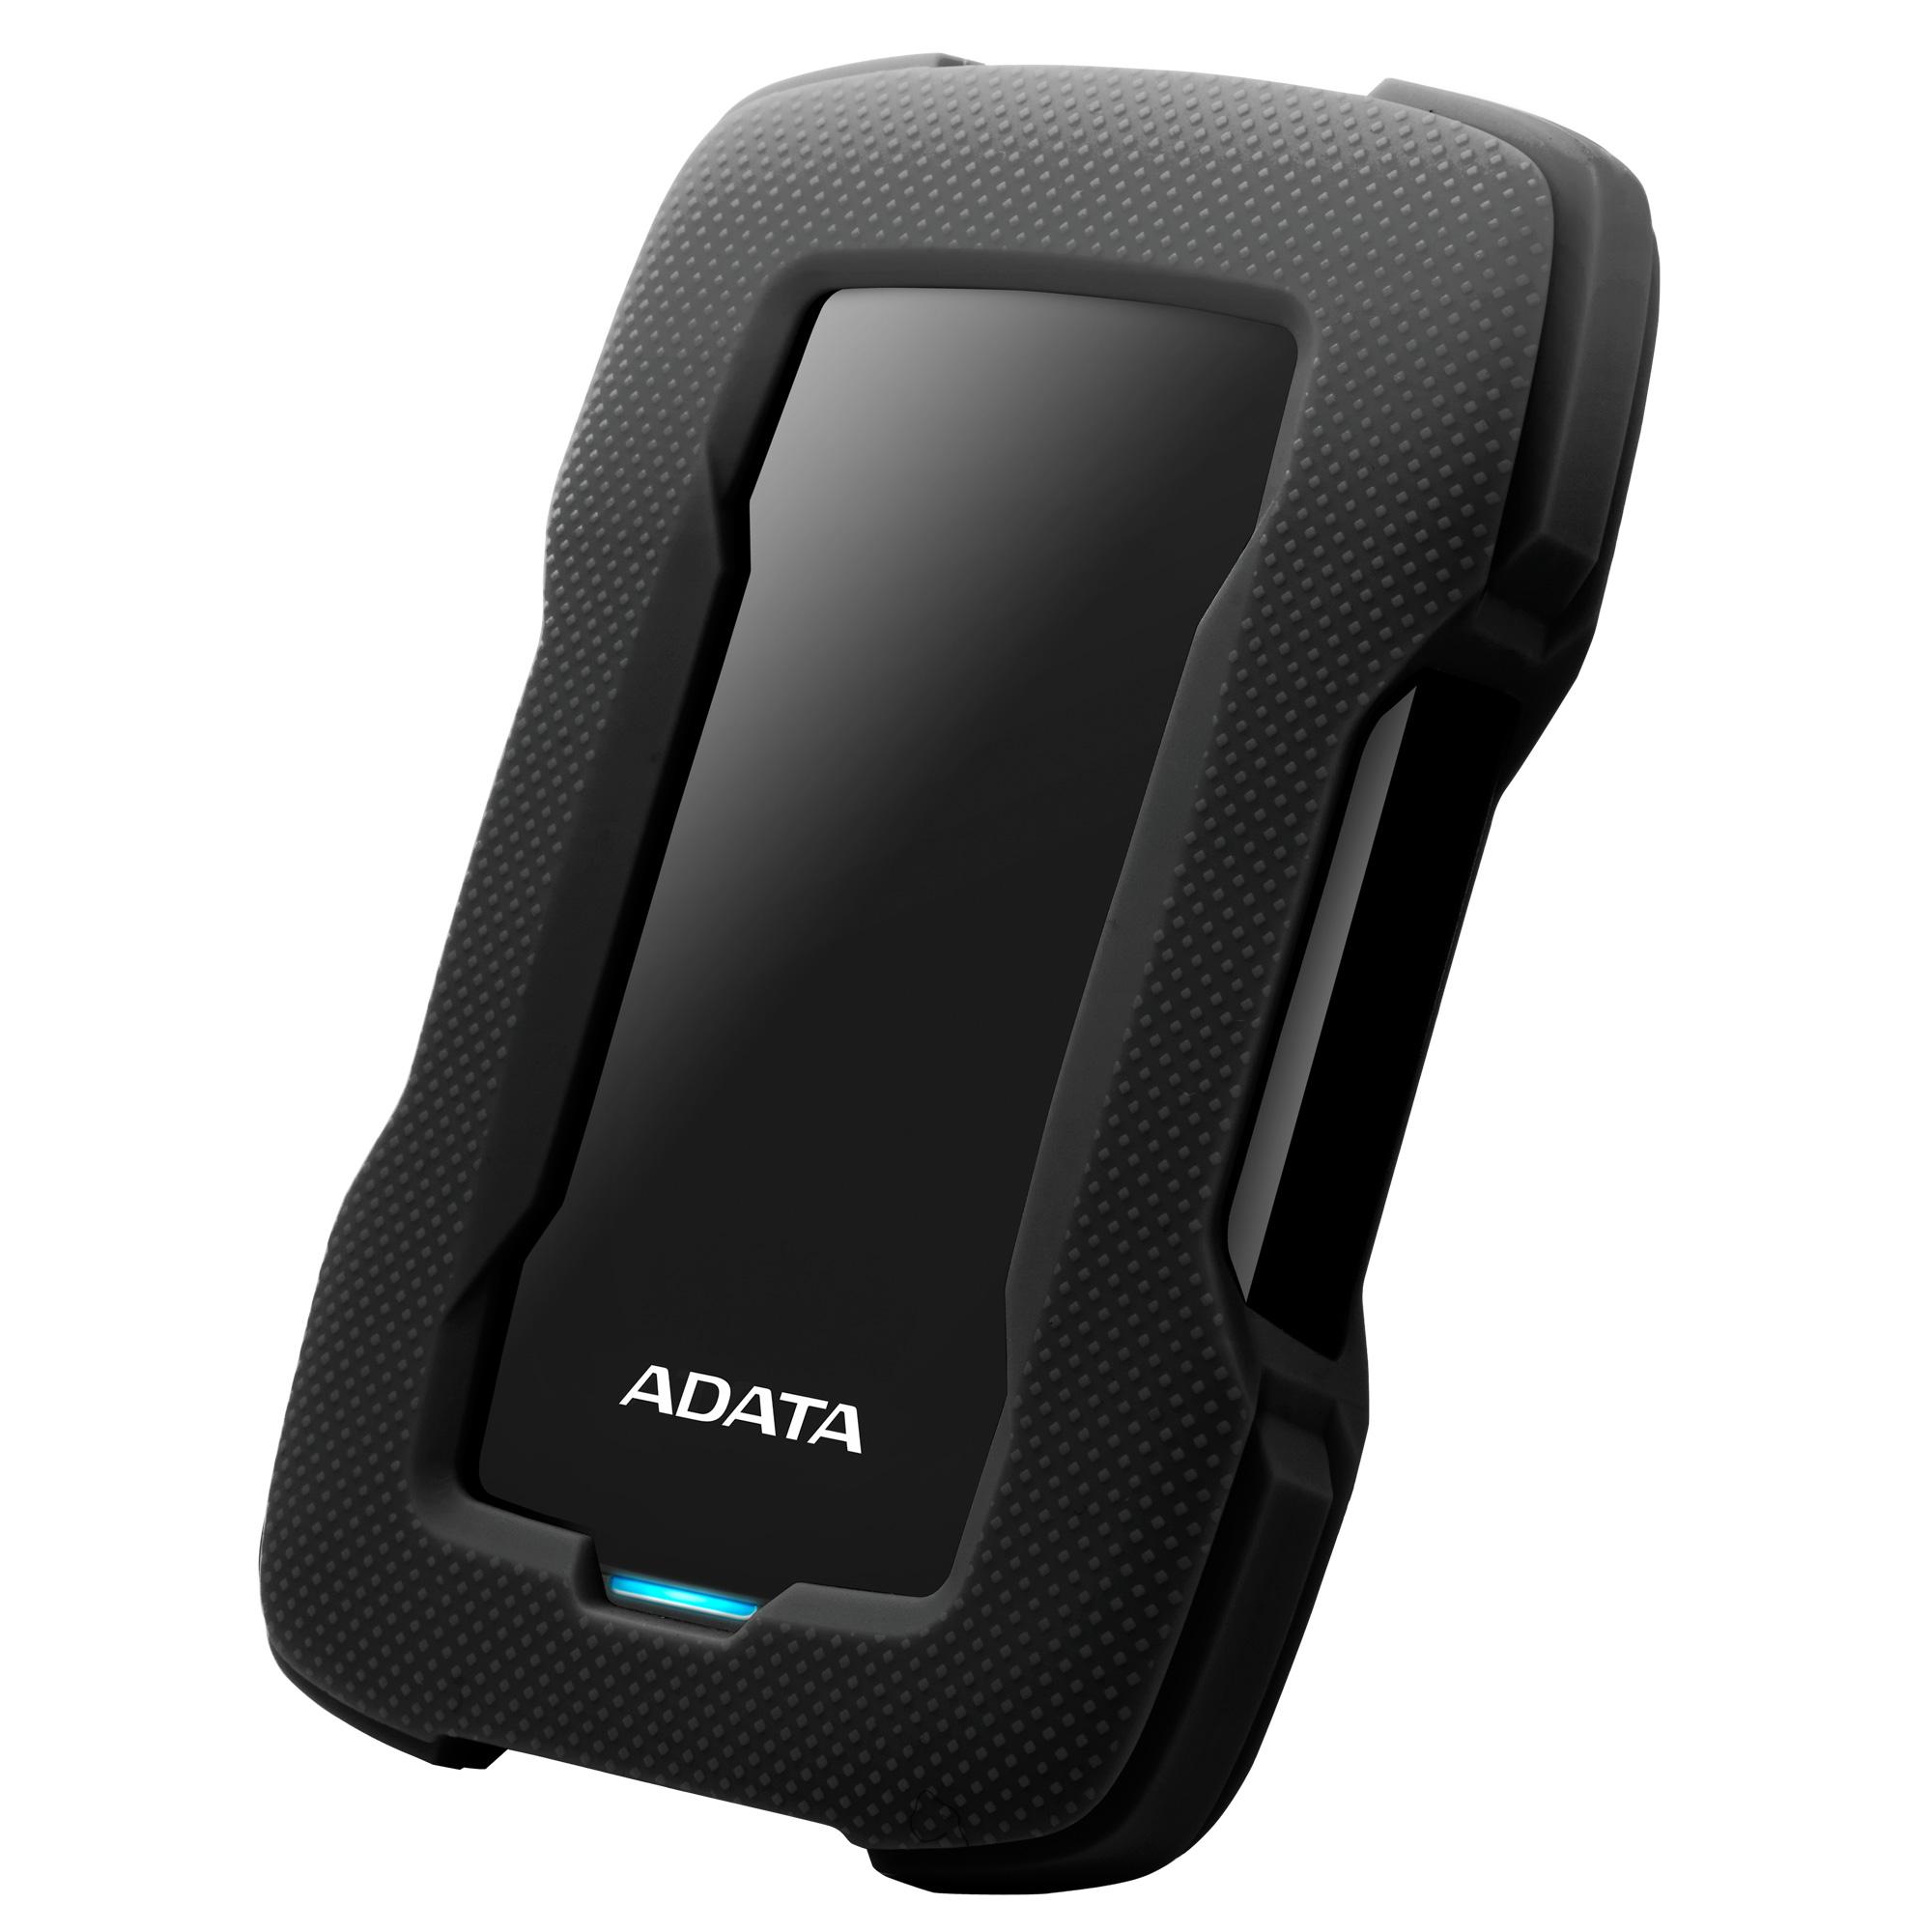 ADATA запускает портативные жёсткие диски с подсветкой и защитой по армейским стандартам